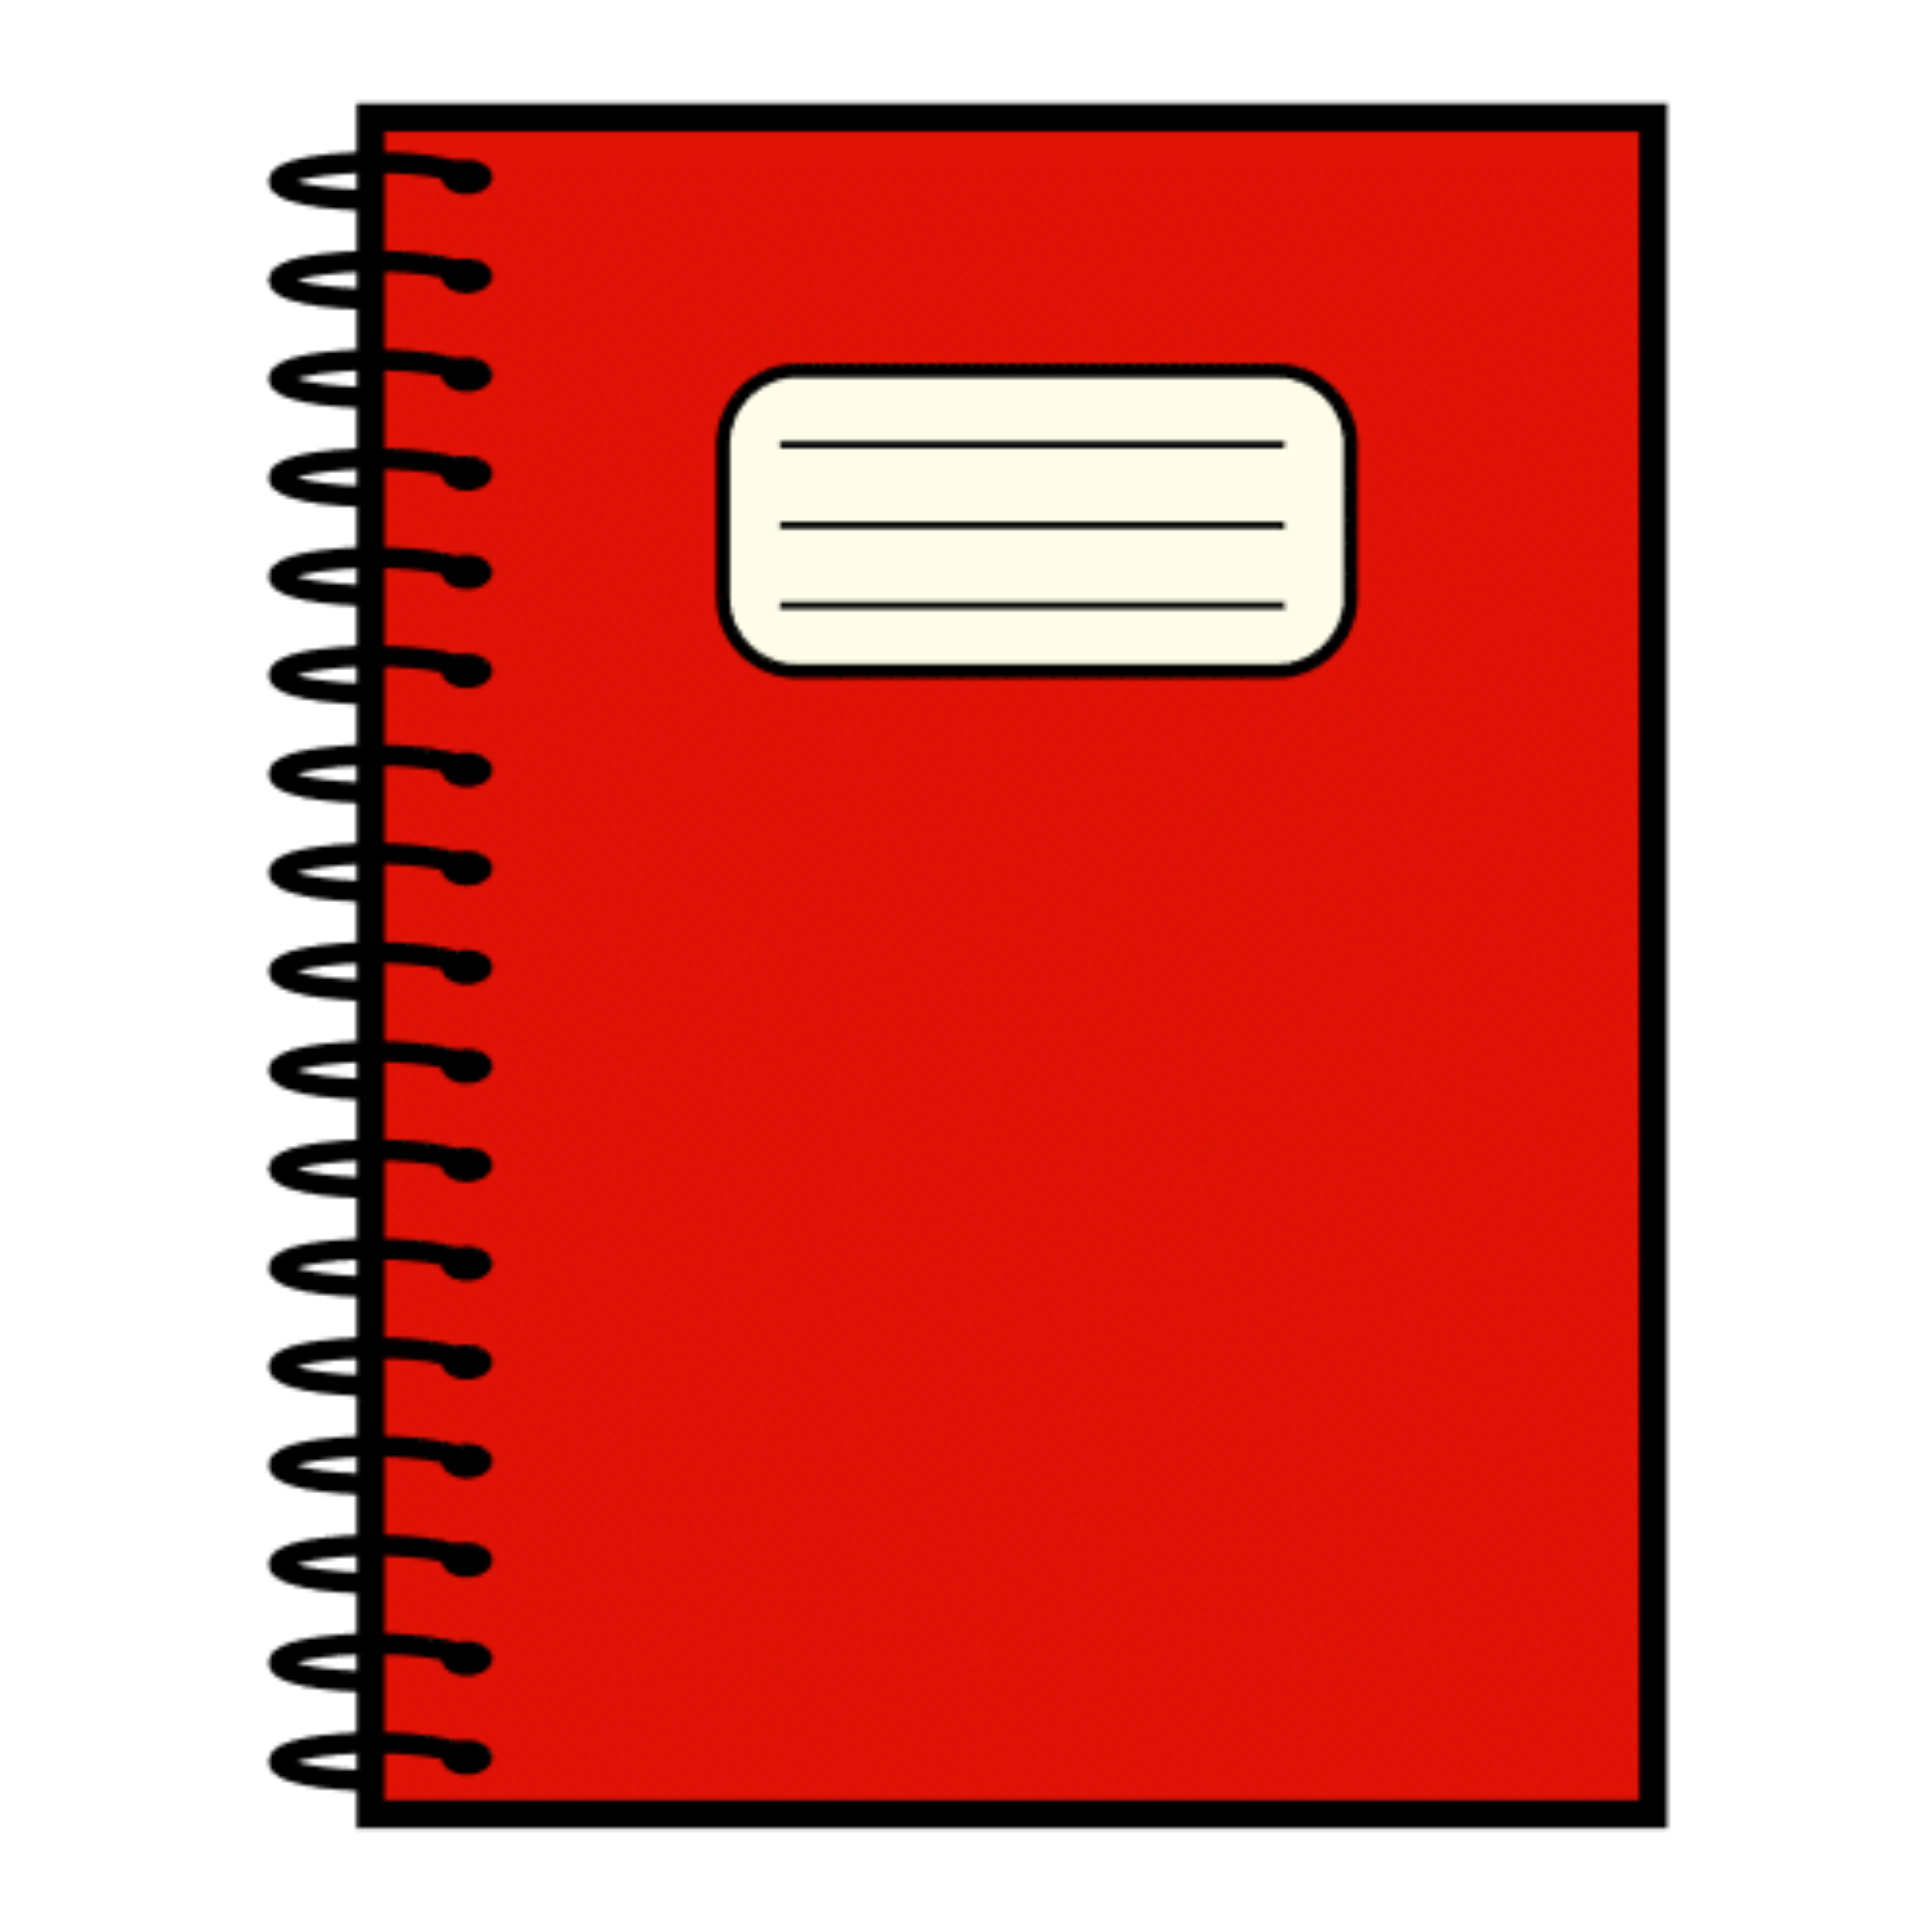 La imagen muestra un cuaderno rojo